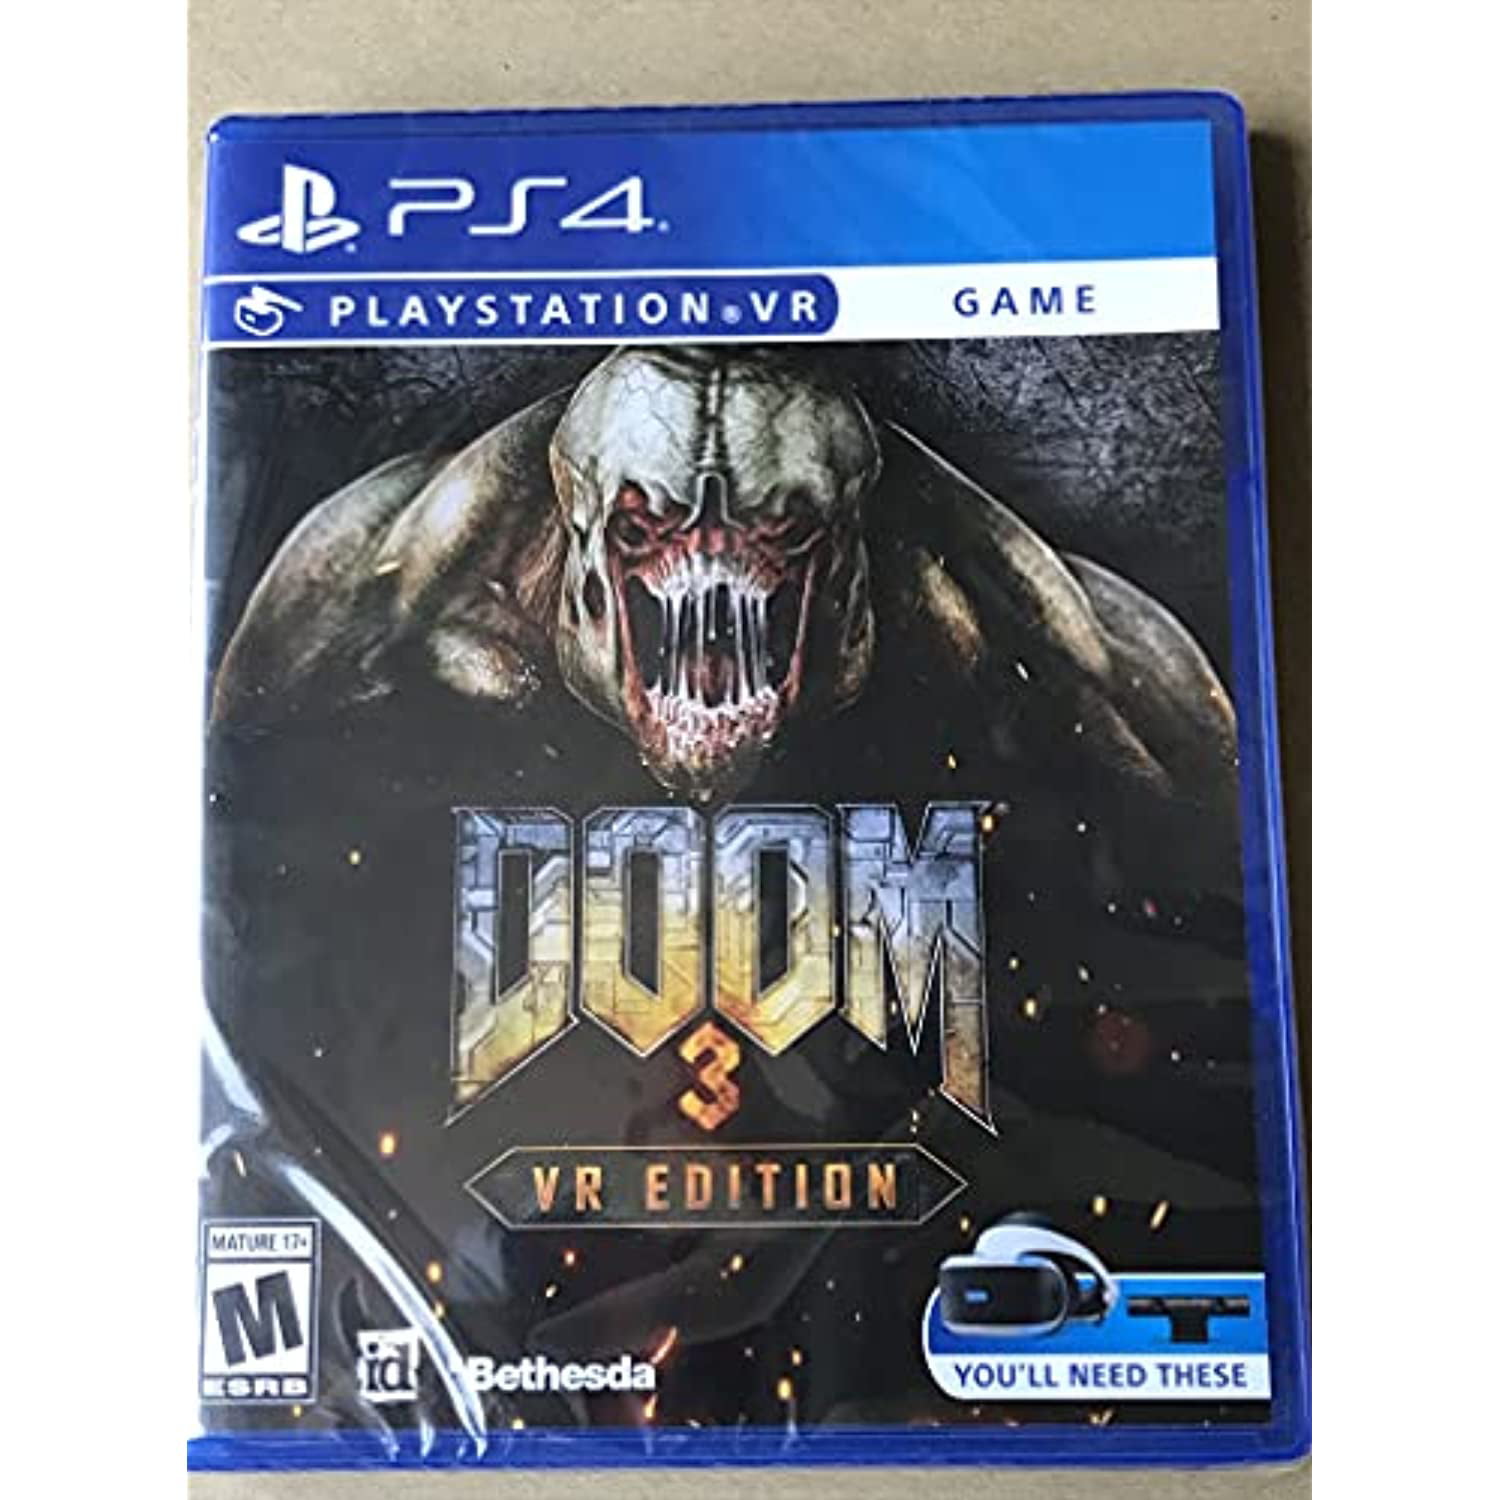 Gentage sig Tekstforfatter få øje på Doom 3 VR Edition - Playstation 4 PSVR [video game] - Walmart.com